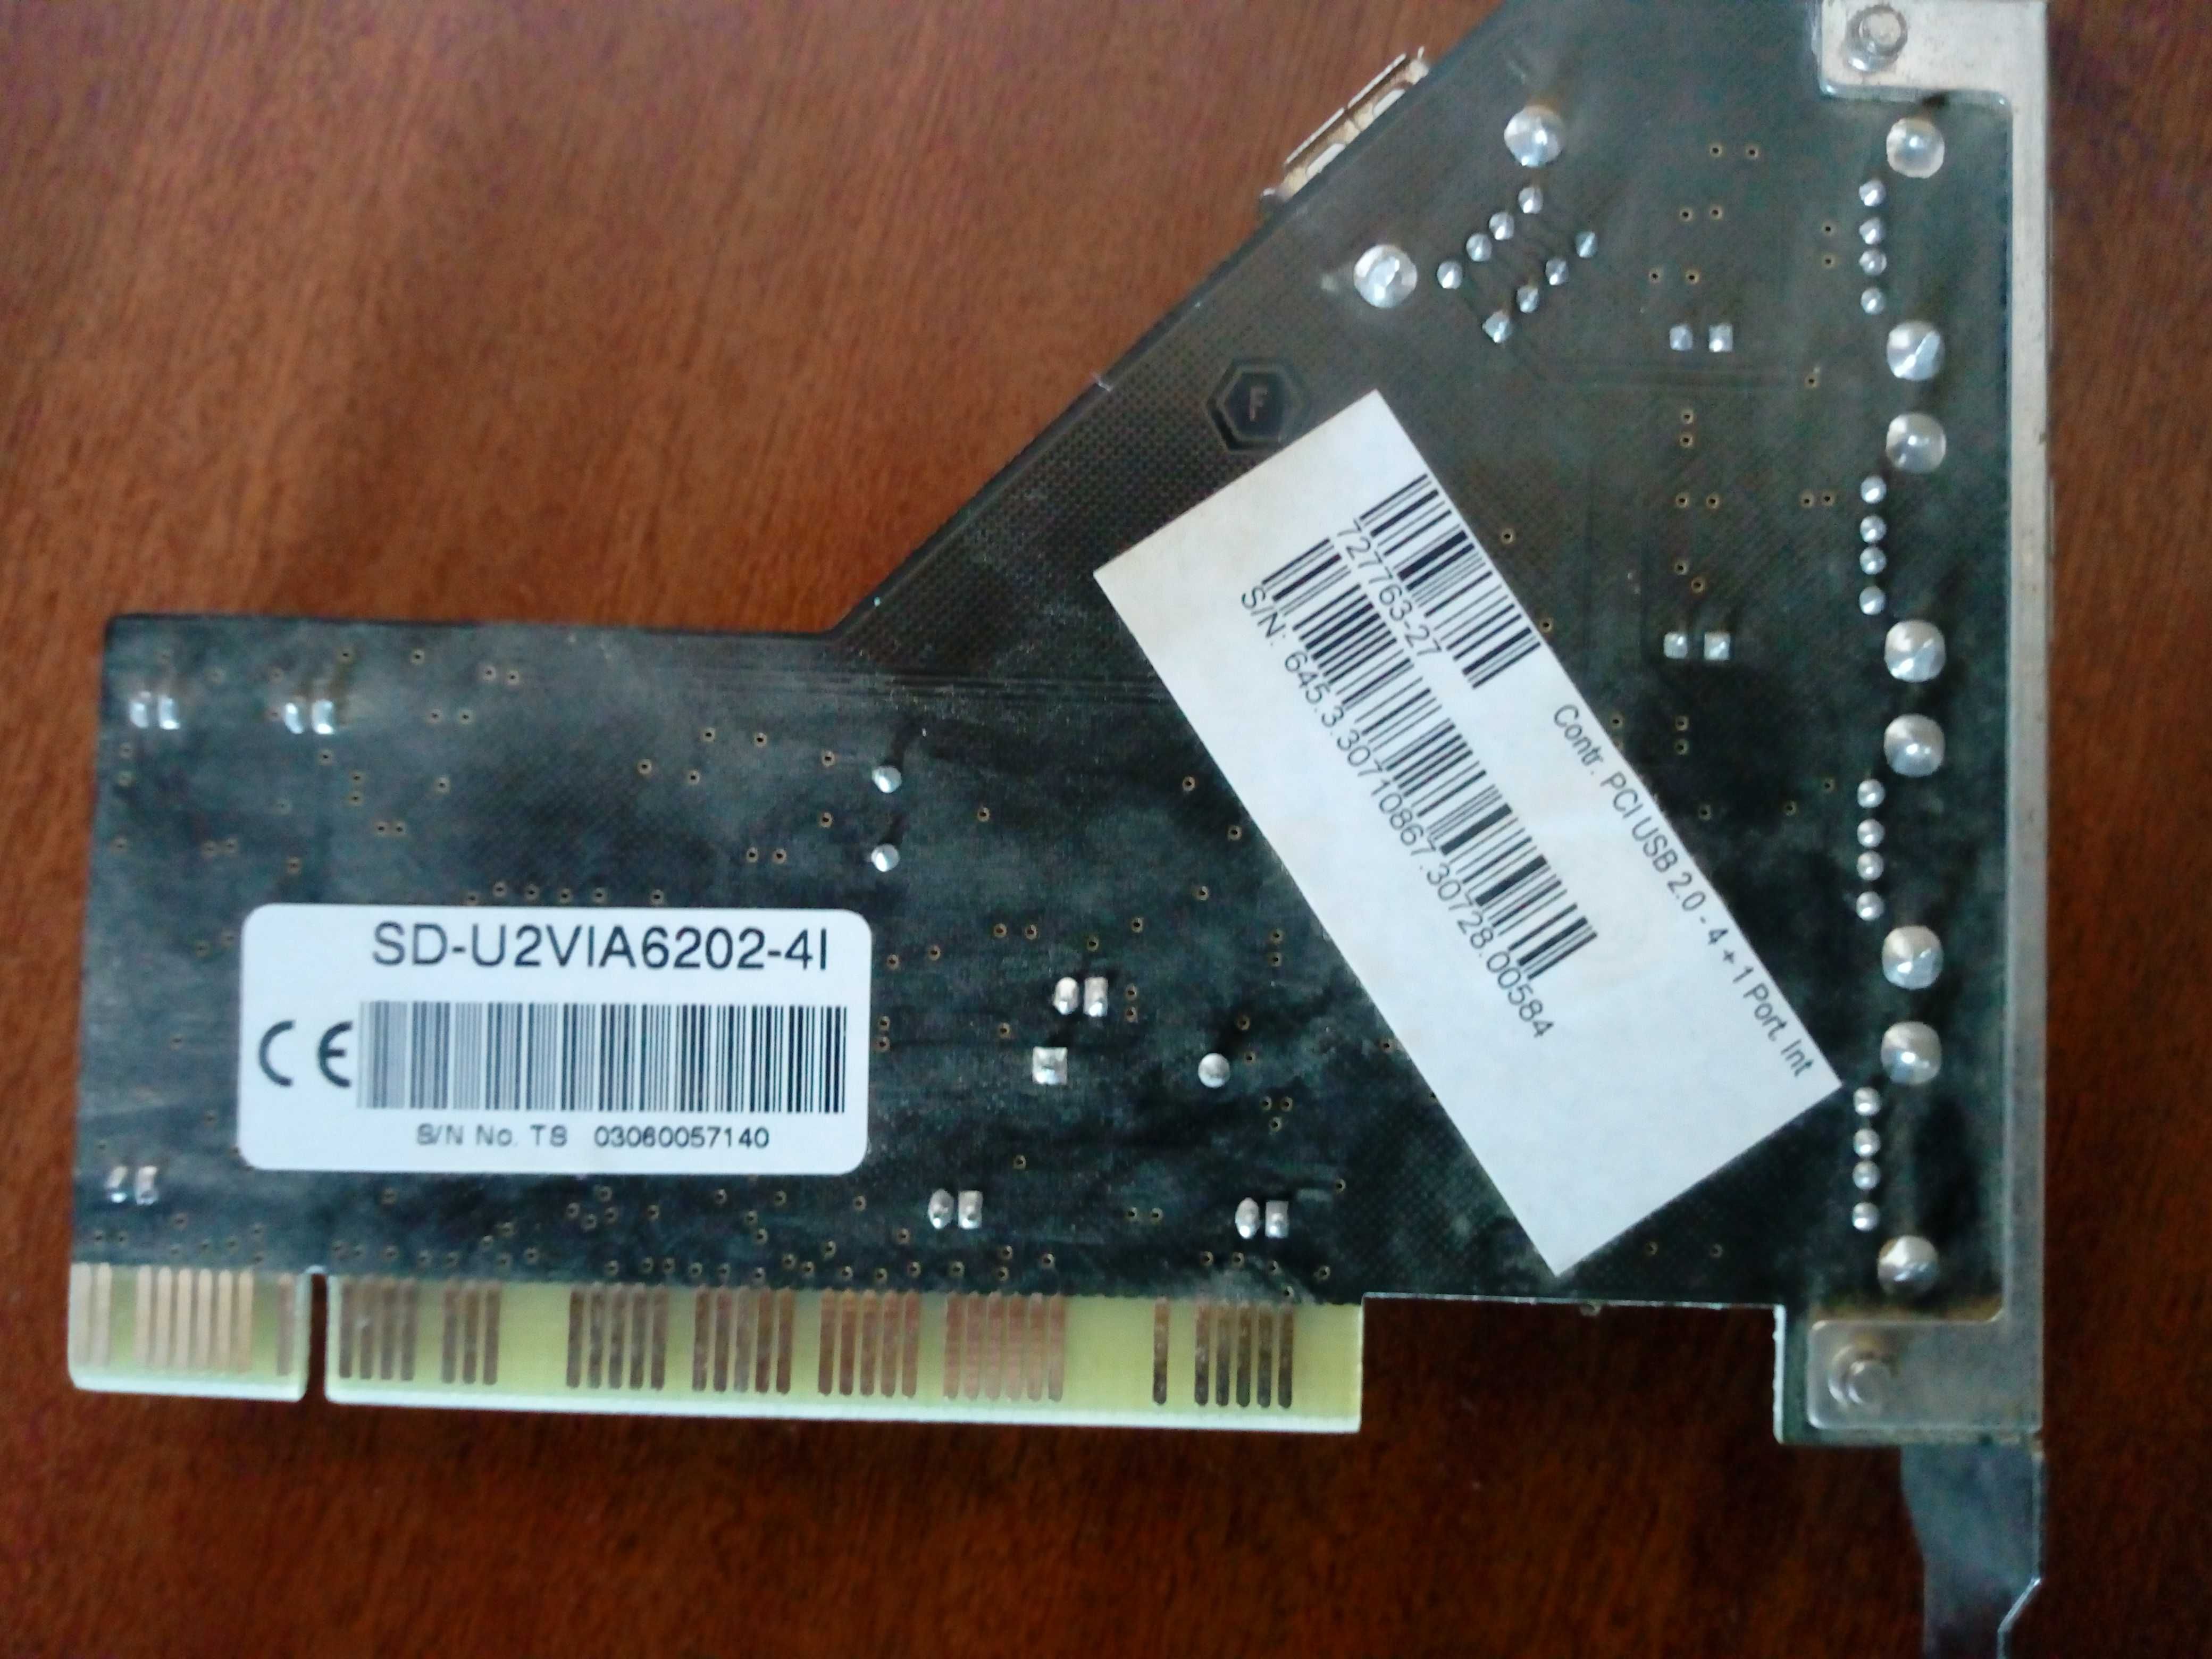 Placa pci com portas usb - VIA 6202 4+1 Port USB 2.0 + cd drivers